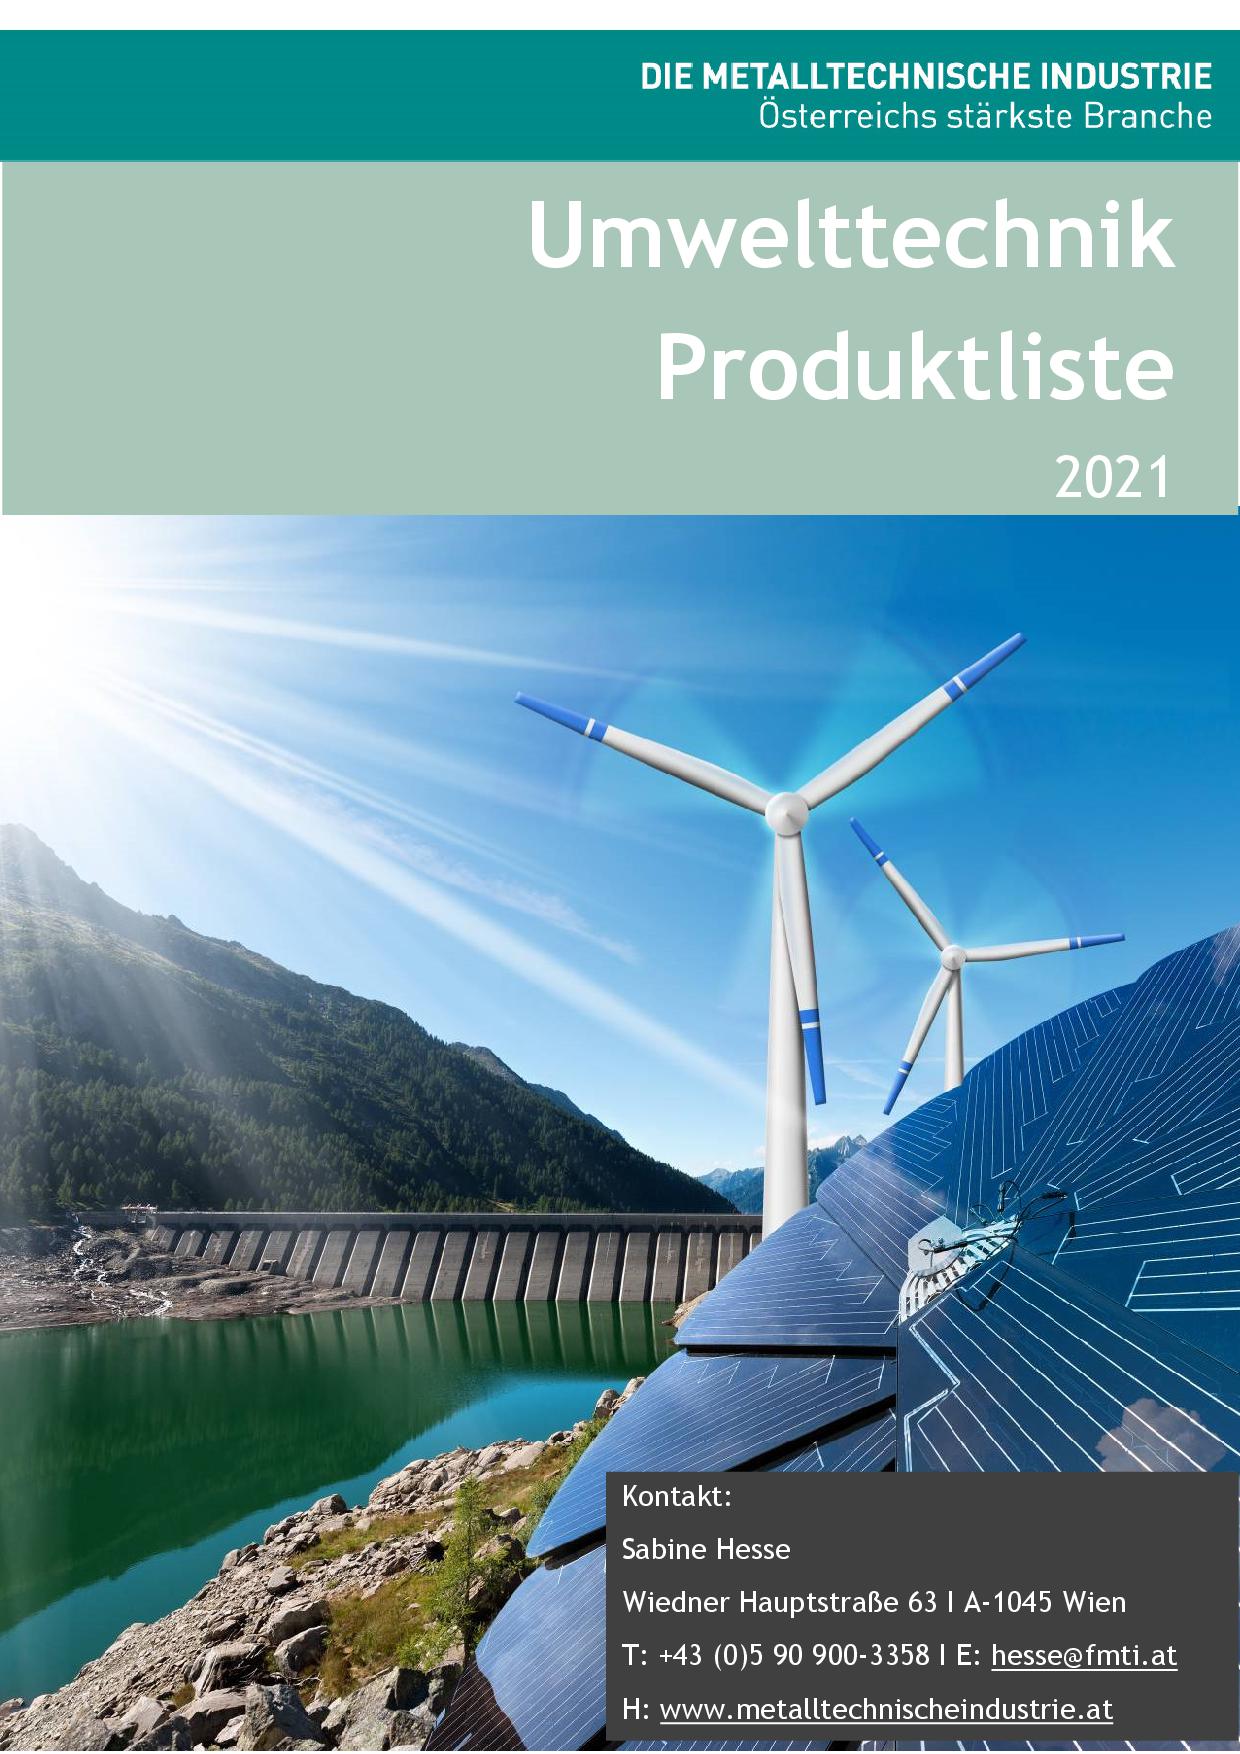 Deckblatt Produktliste Umwelttechnik